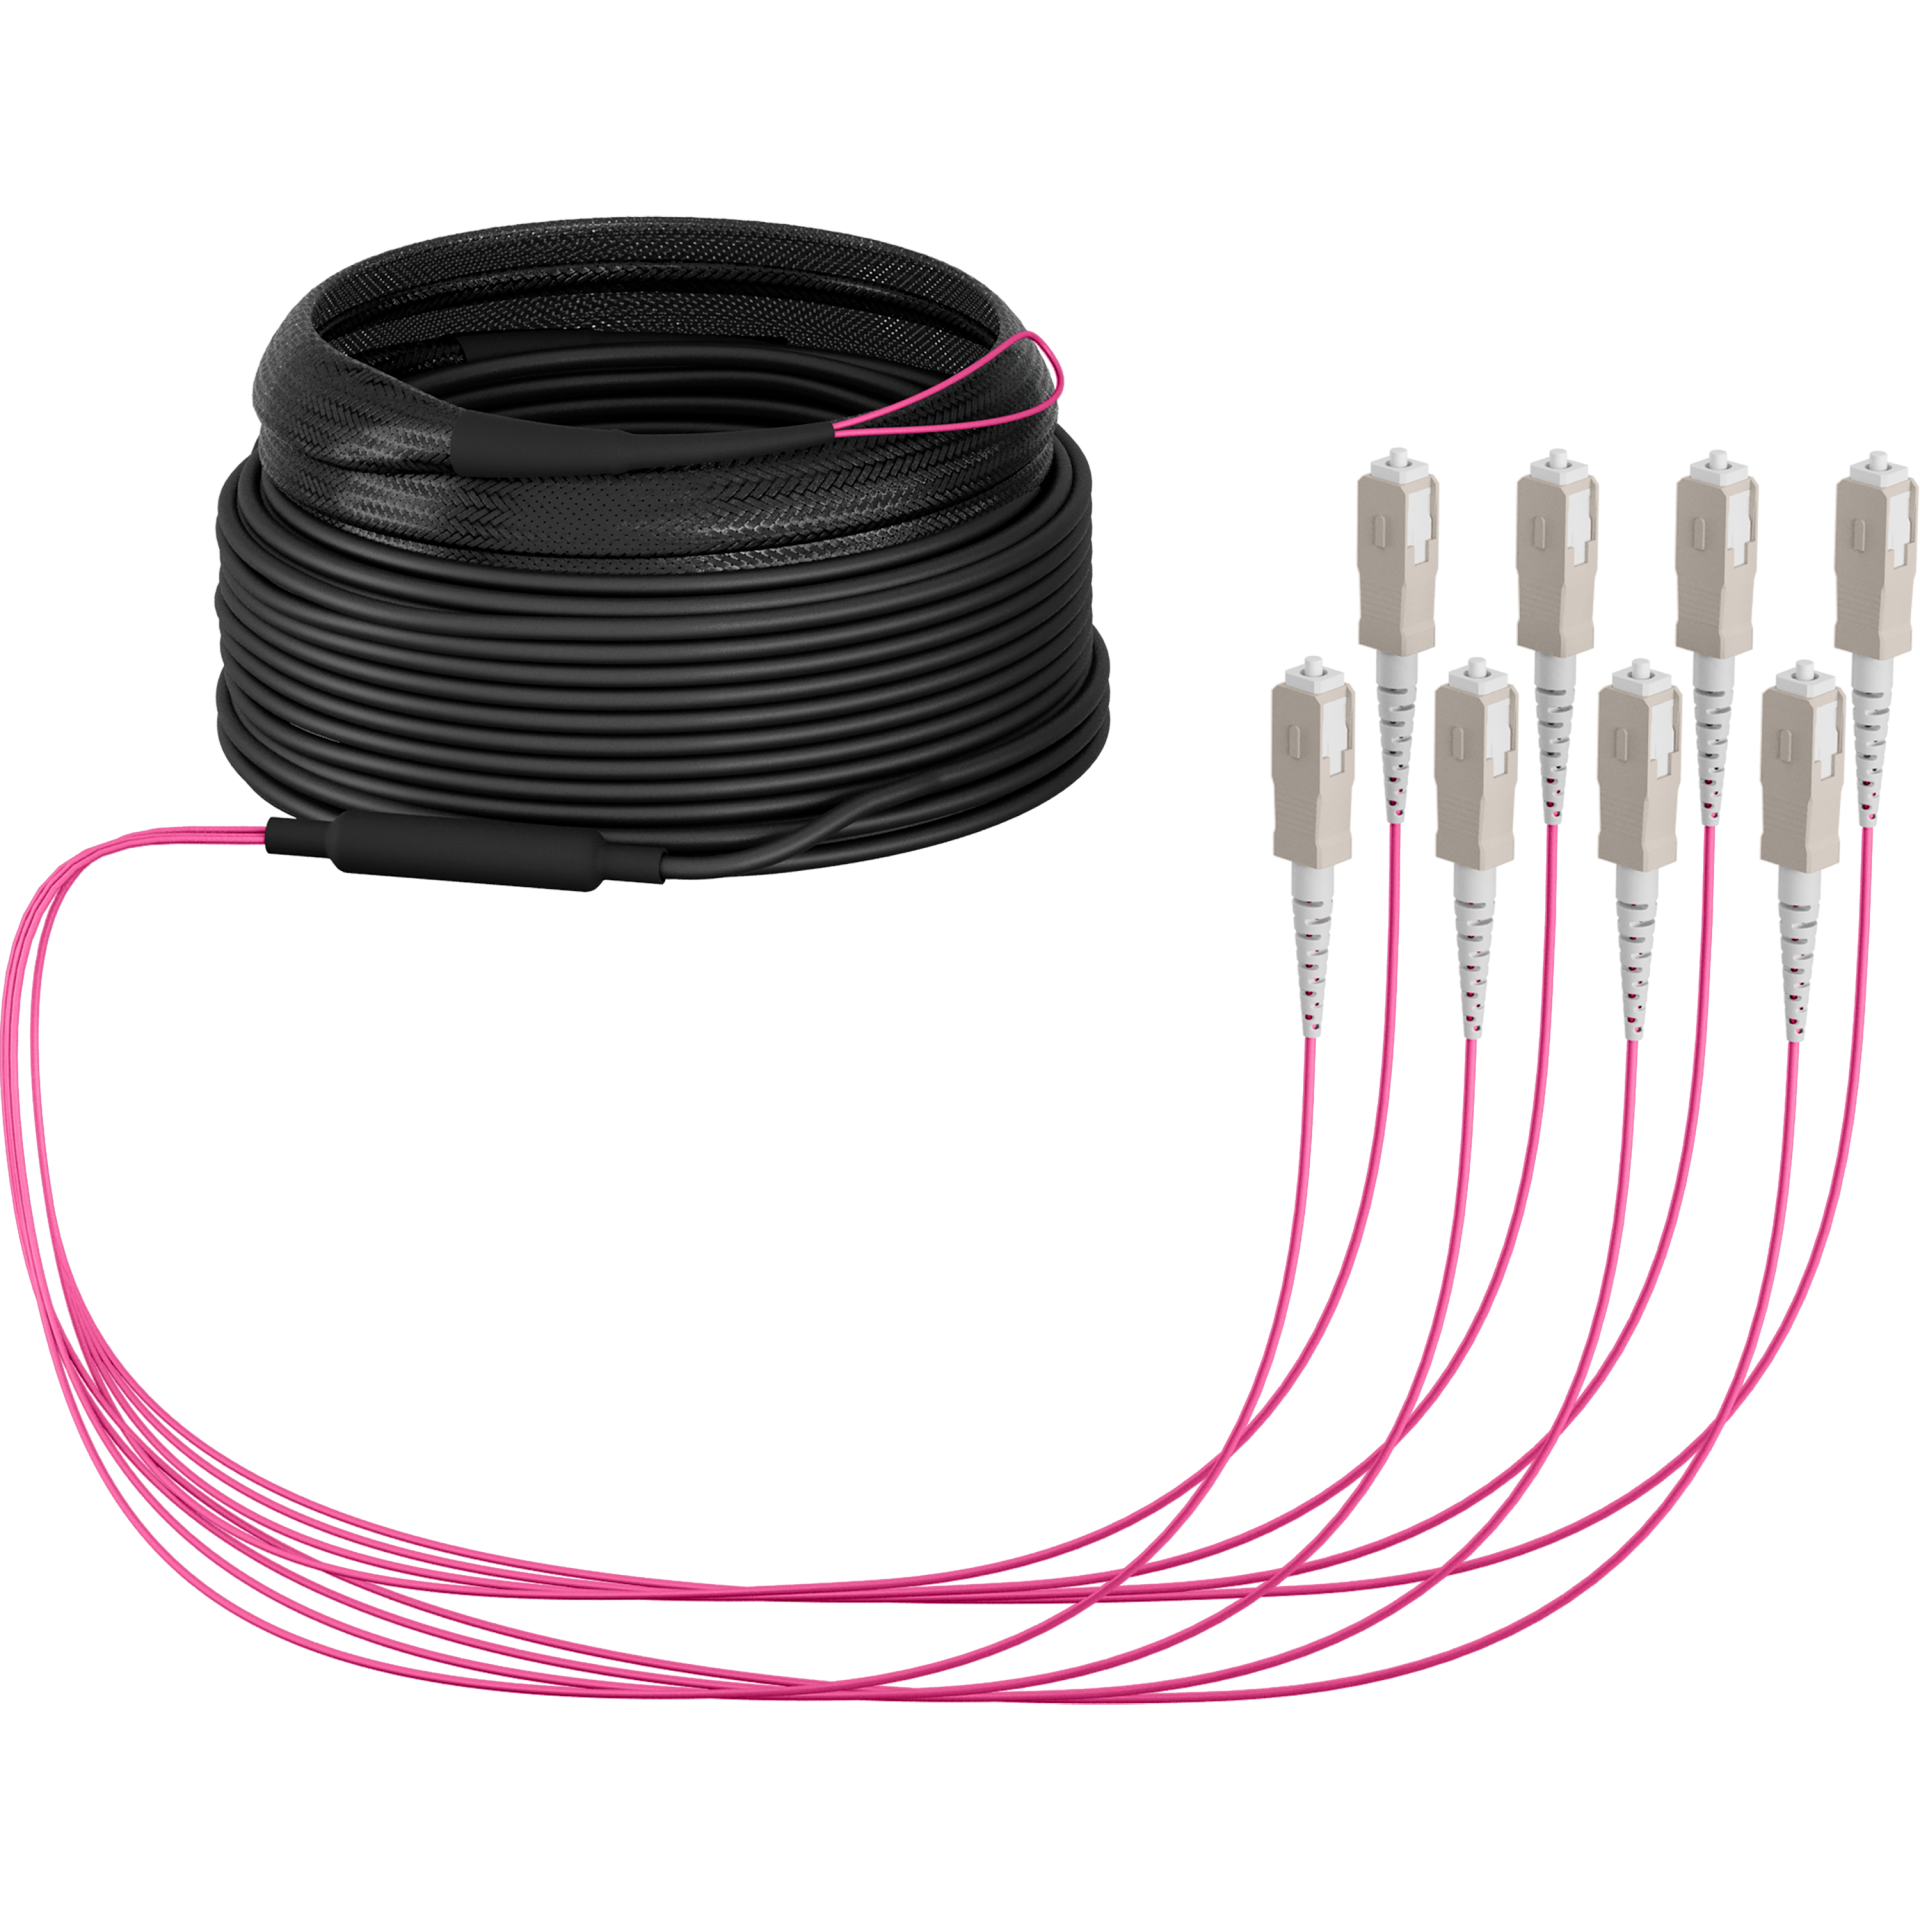 Trunk cable U-DQ(ZN)BH OM4 8G (1x8) SC-SC,20m Dca LSZH